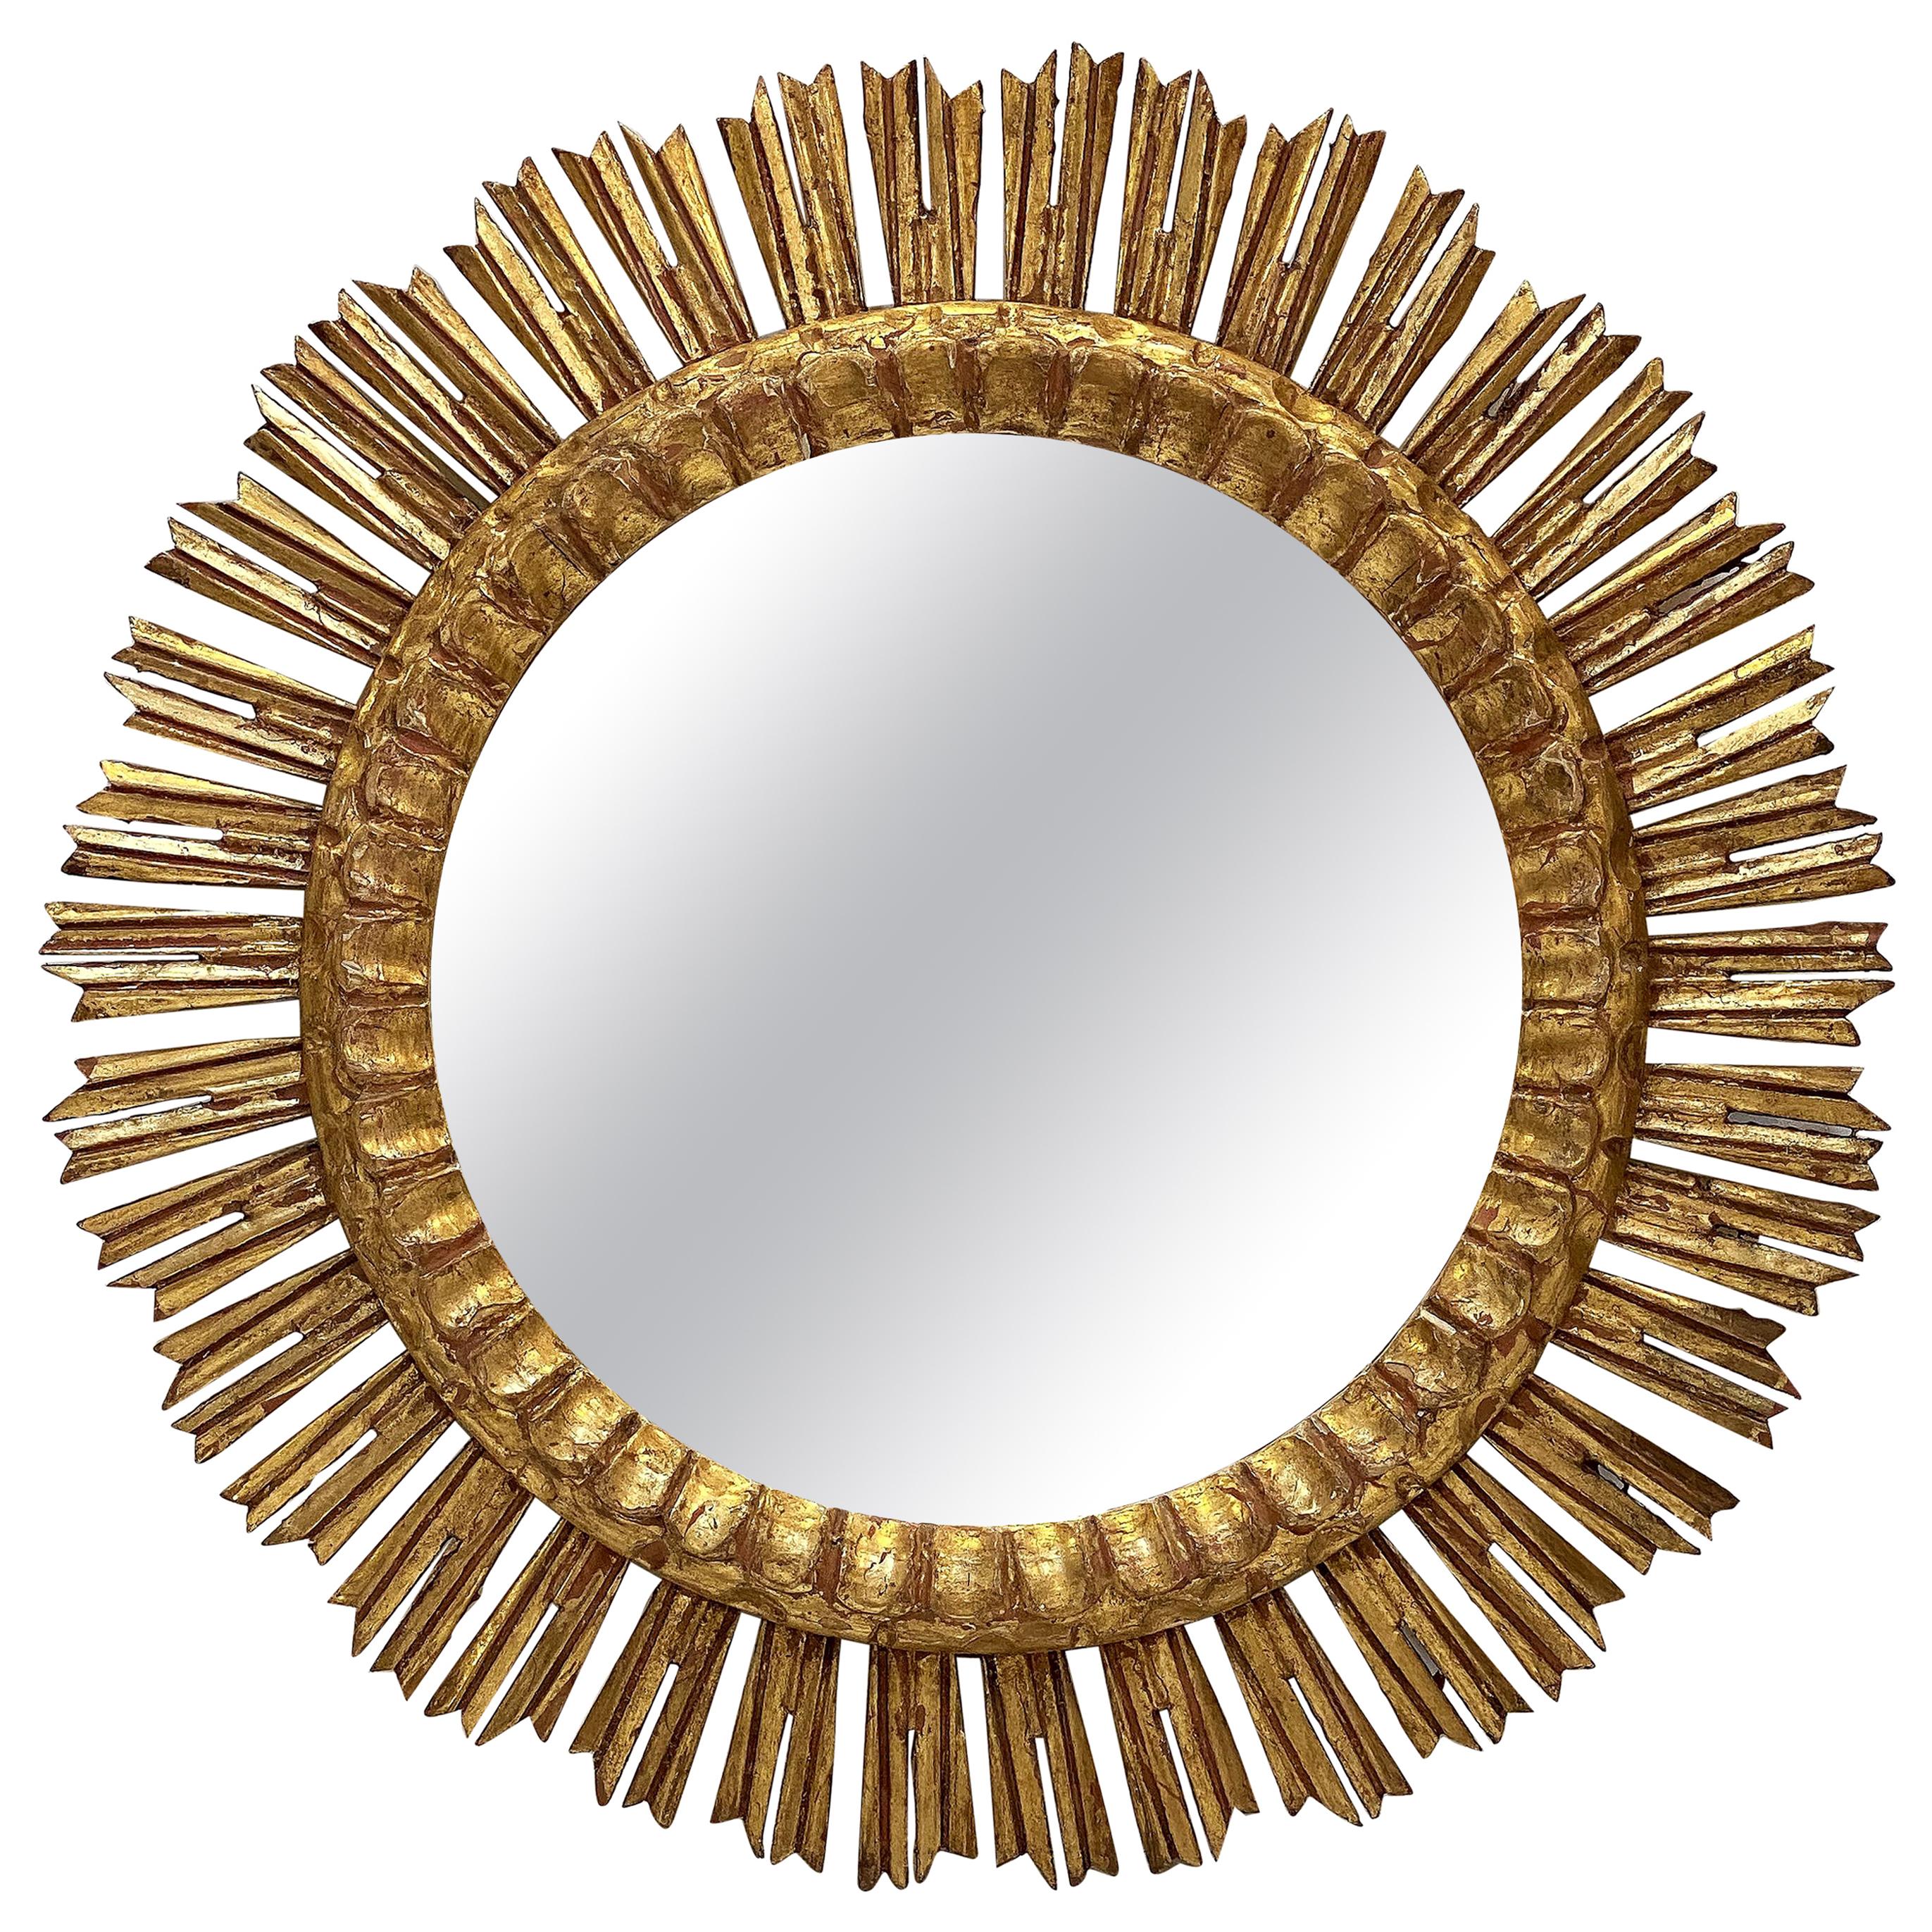 Large French Gilt Starburst or Sunburst Mirror (Diameter 24 1/4)